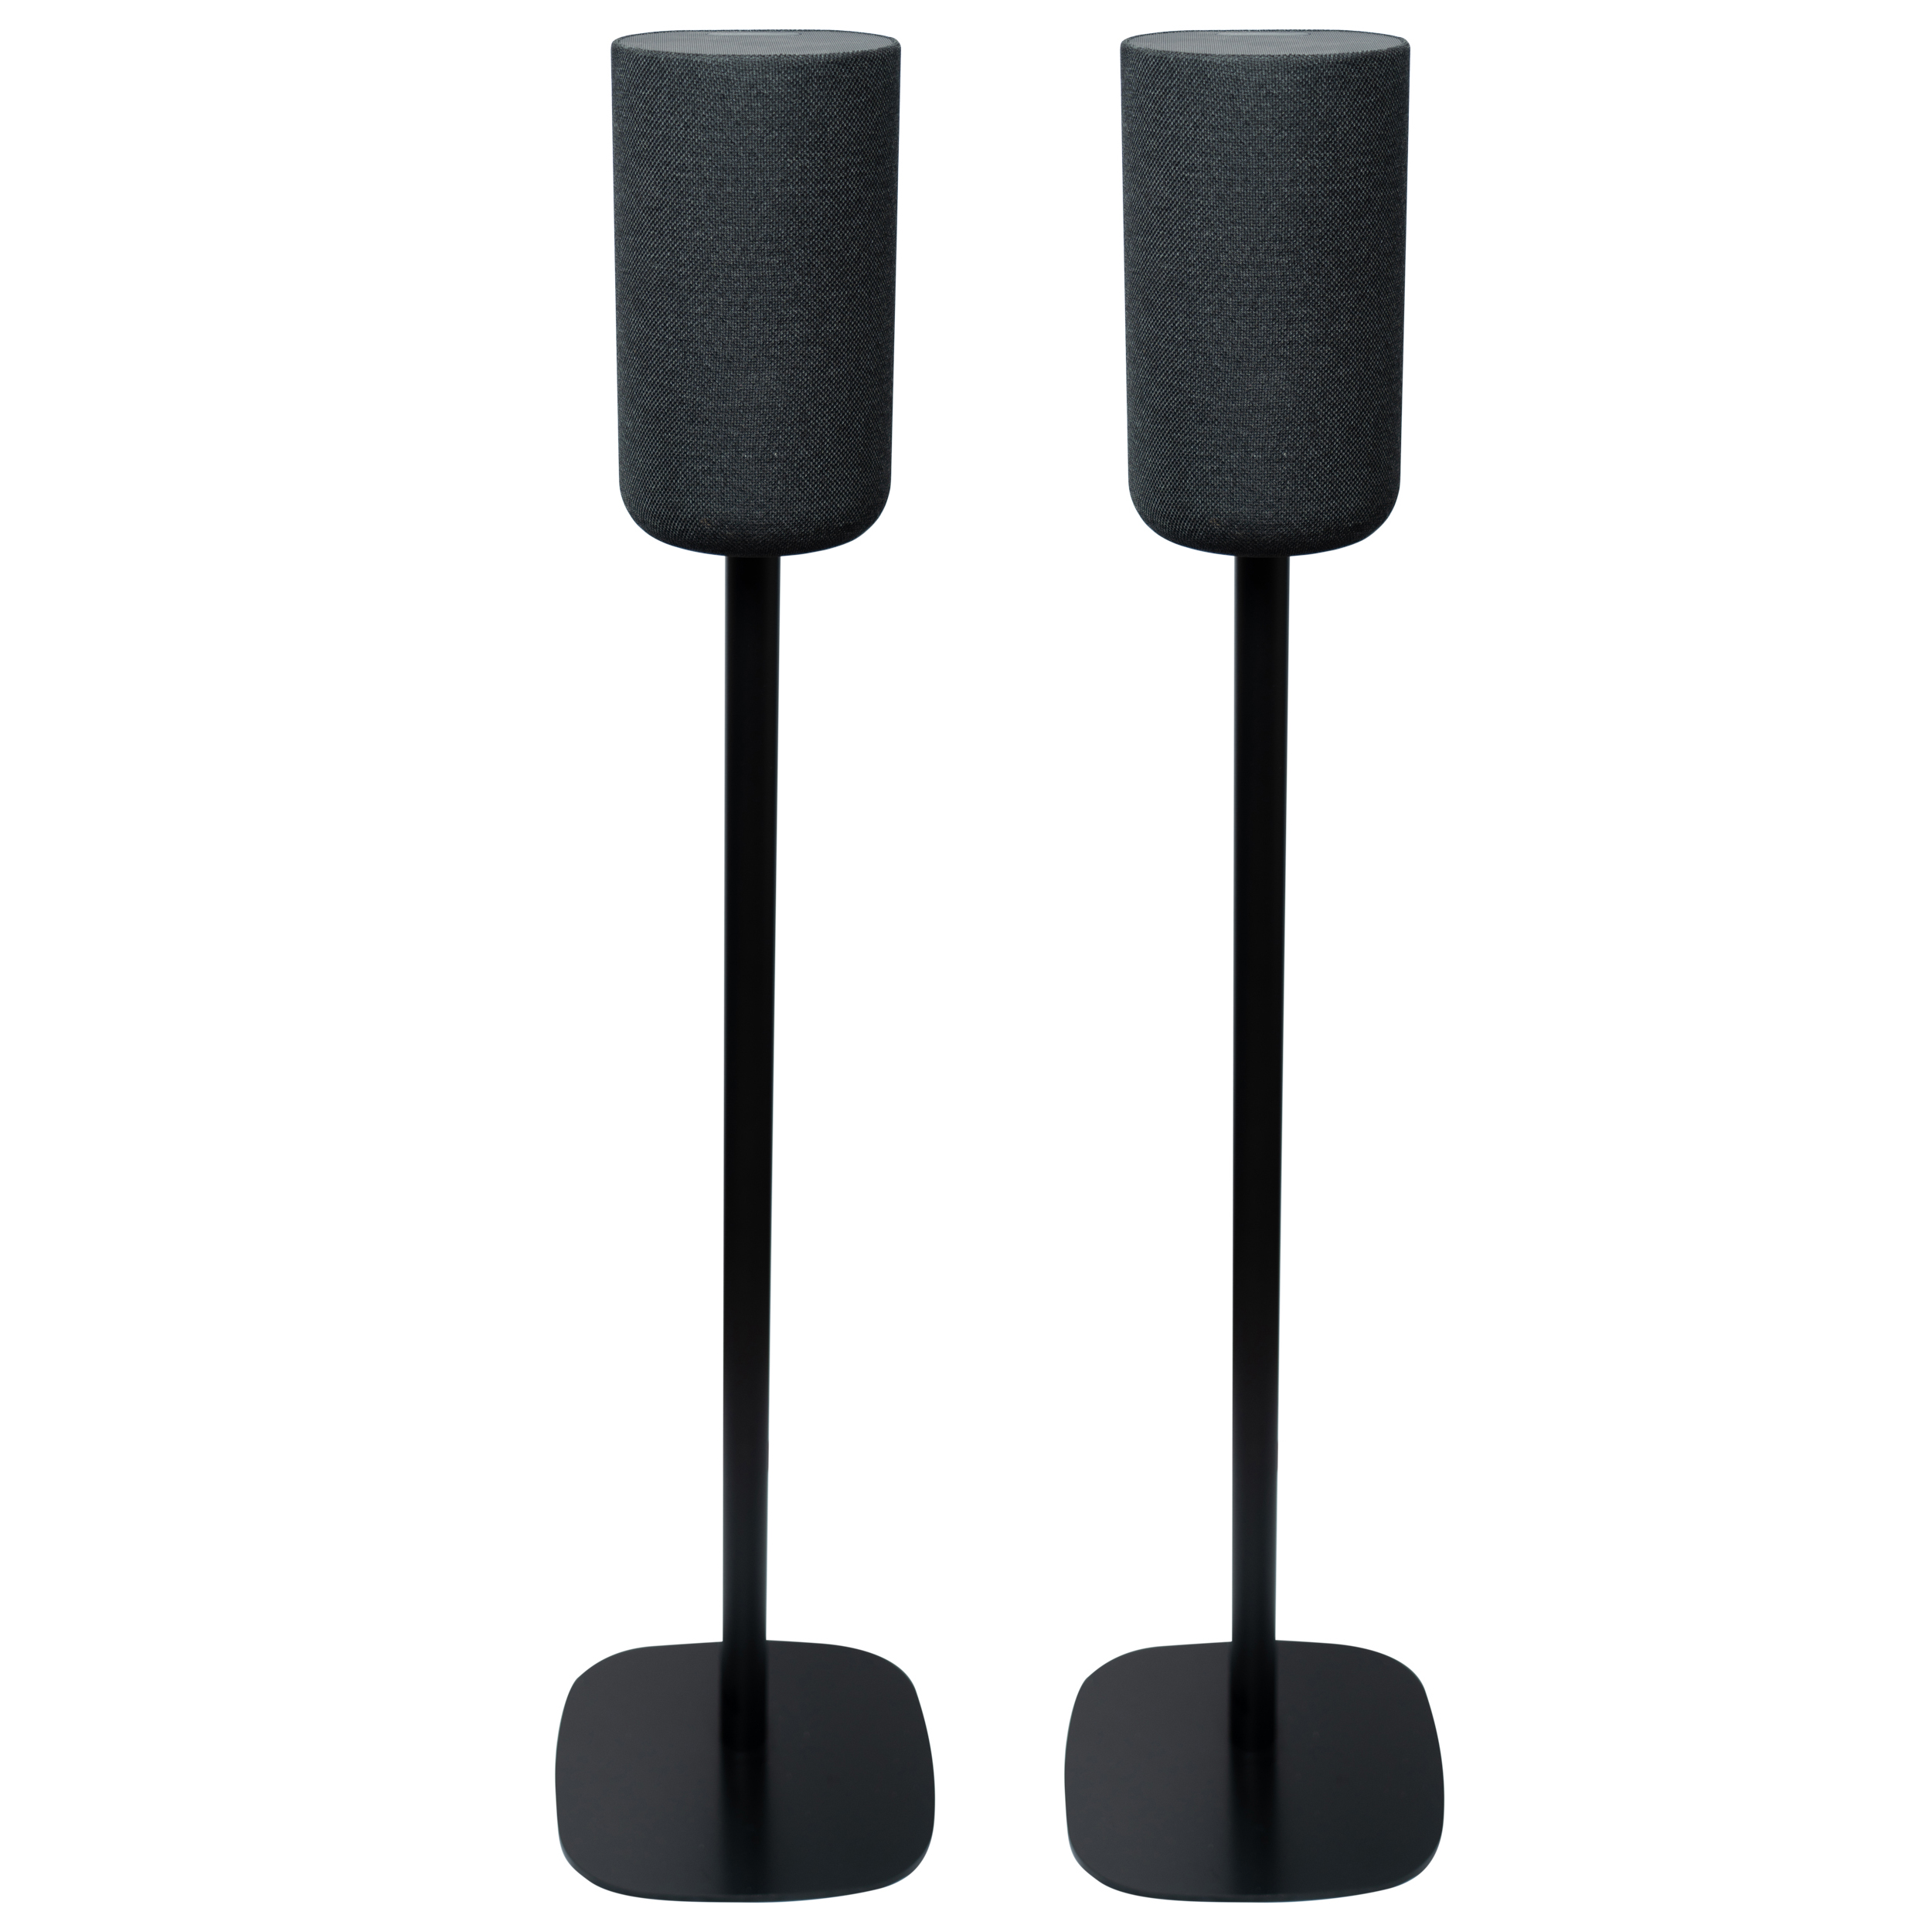 Vebos floor stand Sony SA-RS5 black set